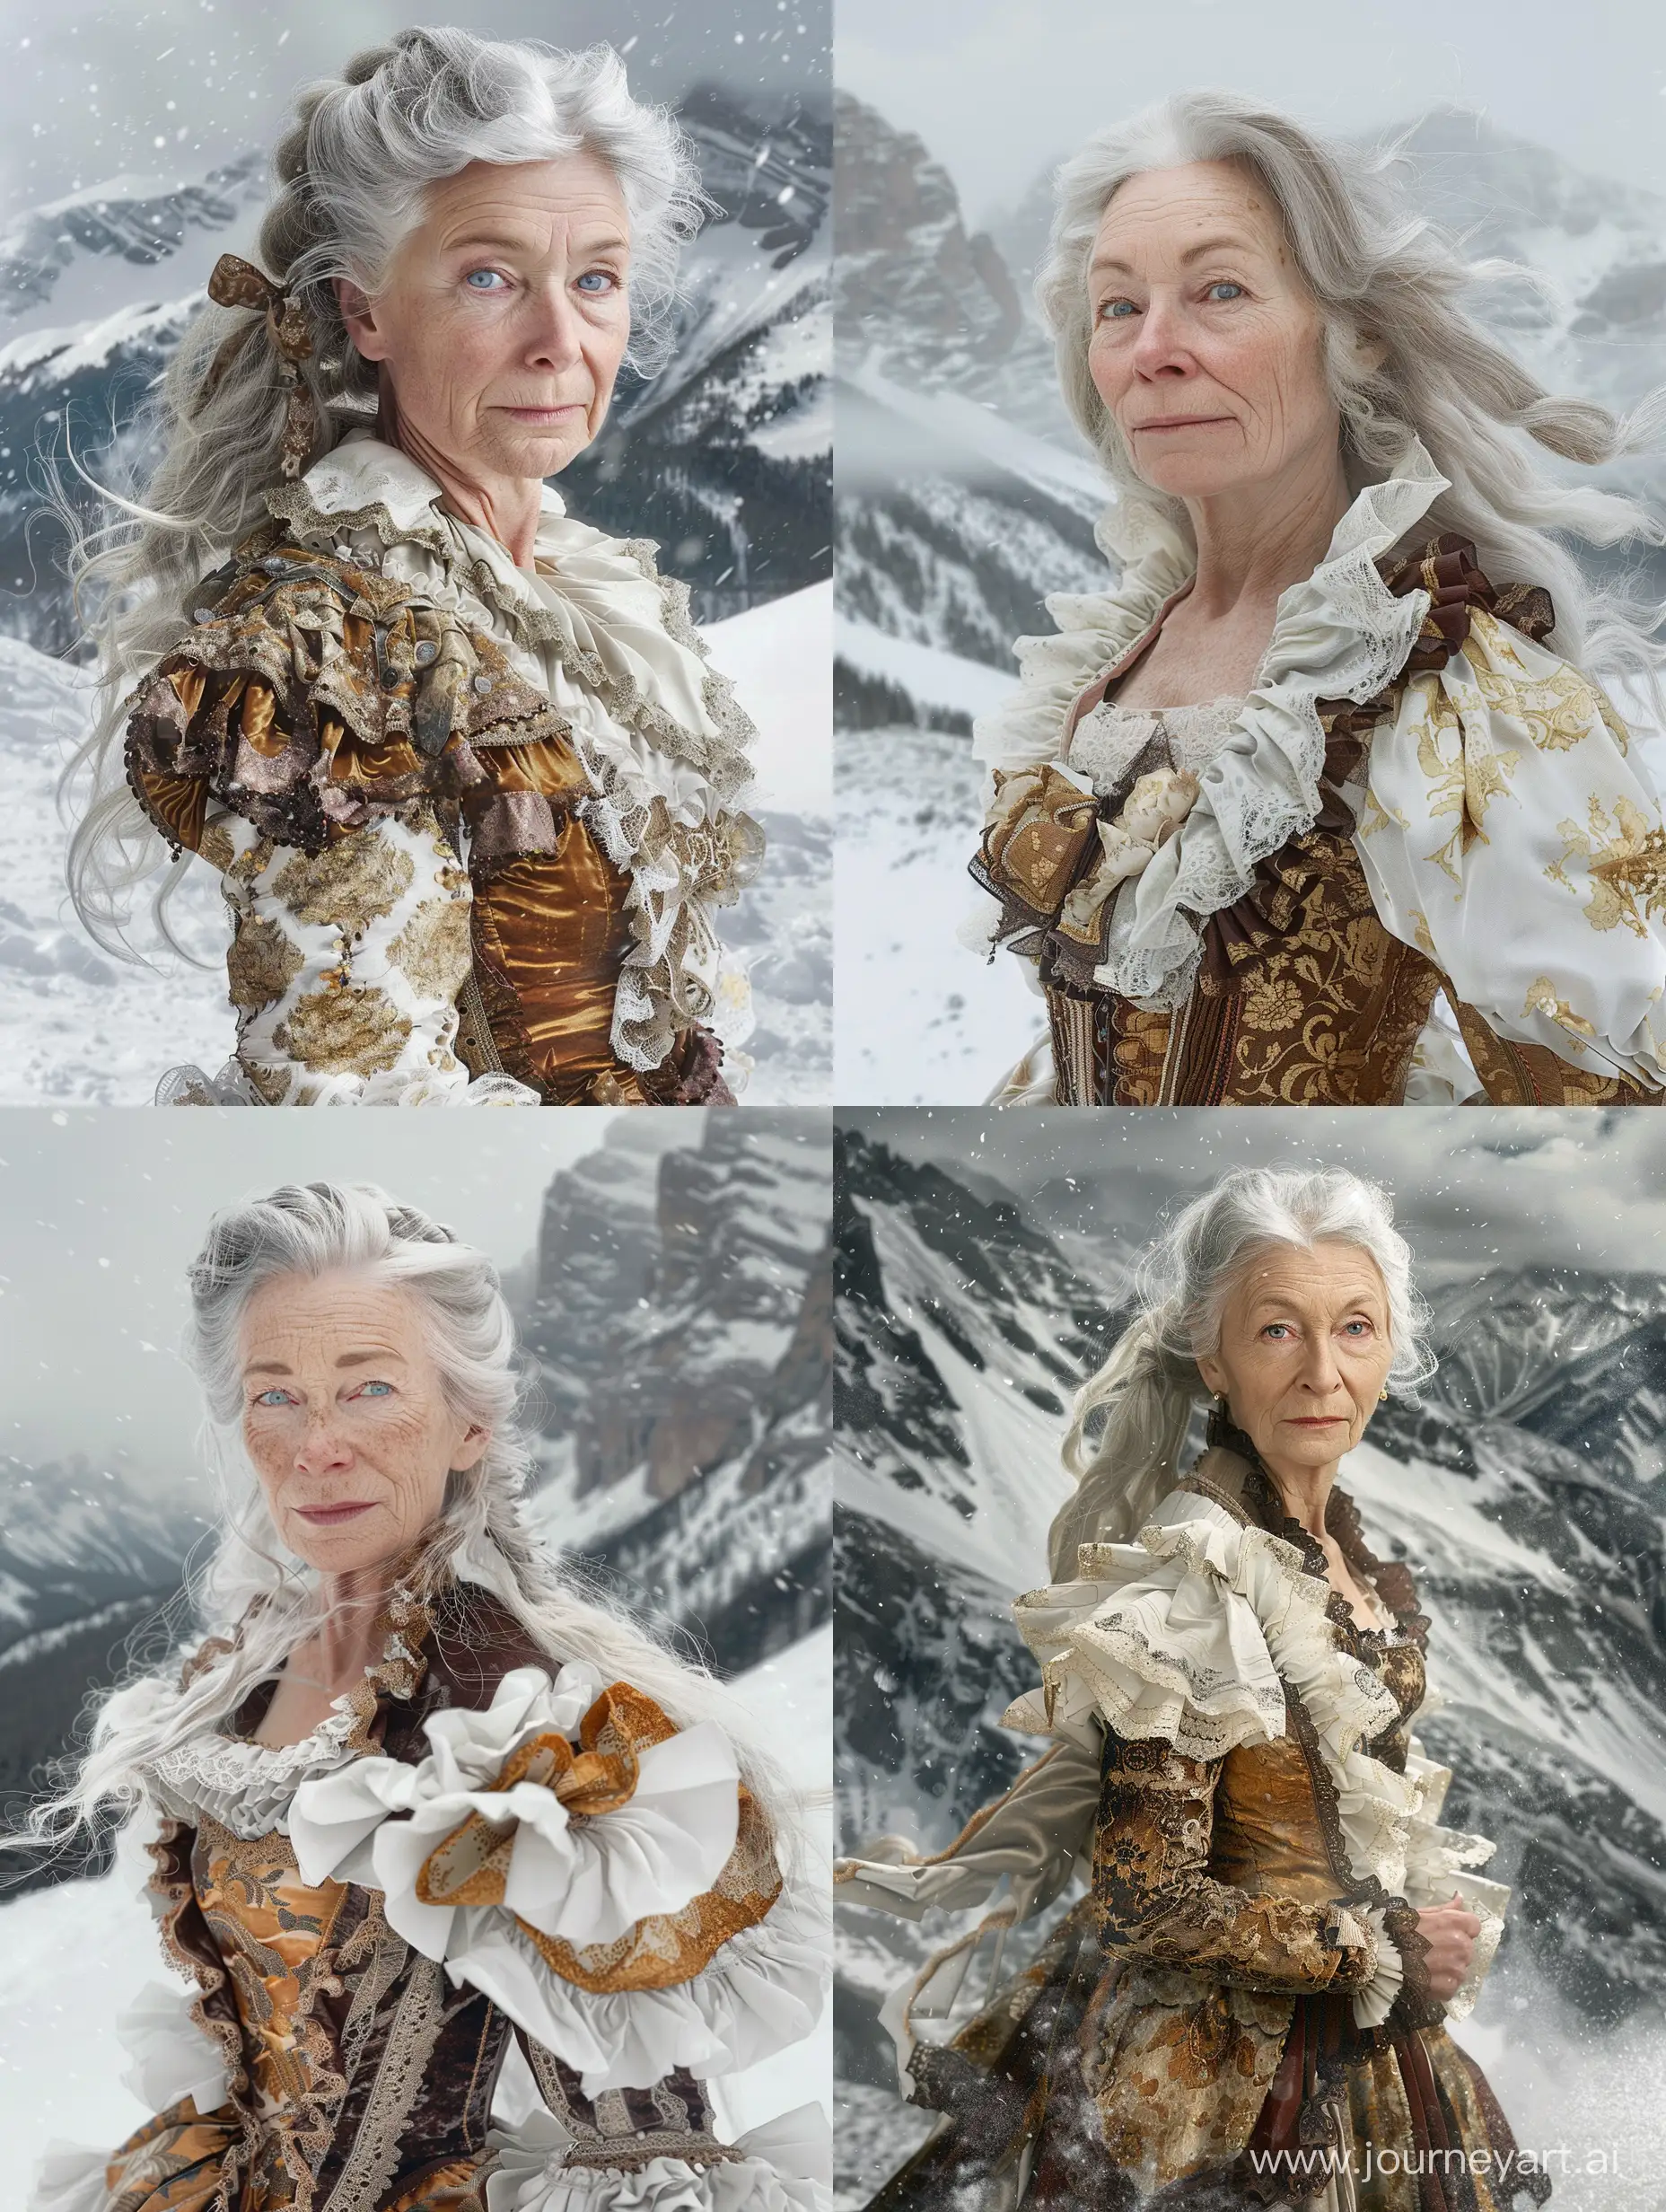 Elegant-Aristocrat-in-Winter-Wonderland-Vintage-Fashion-Amidst-Snowy-Mountains